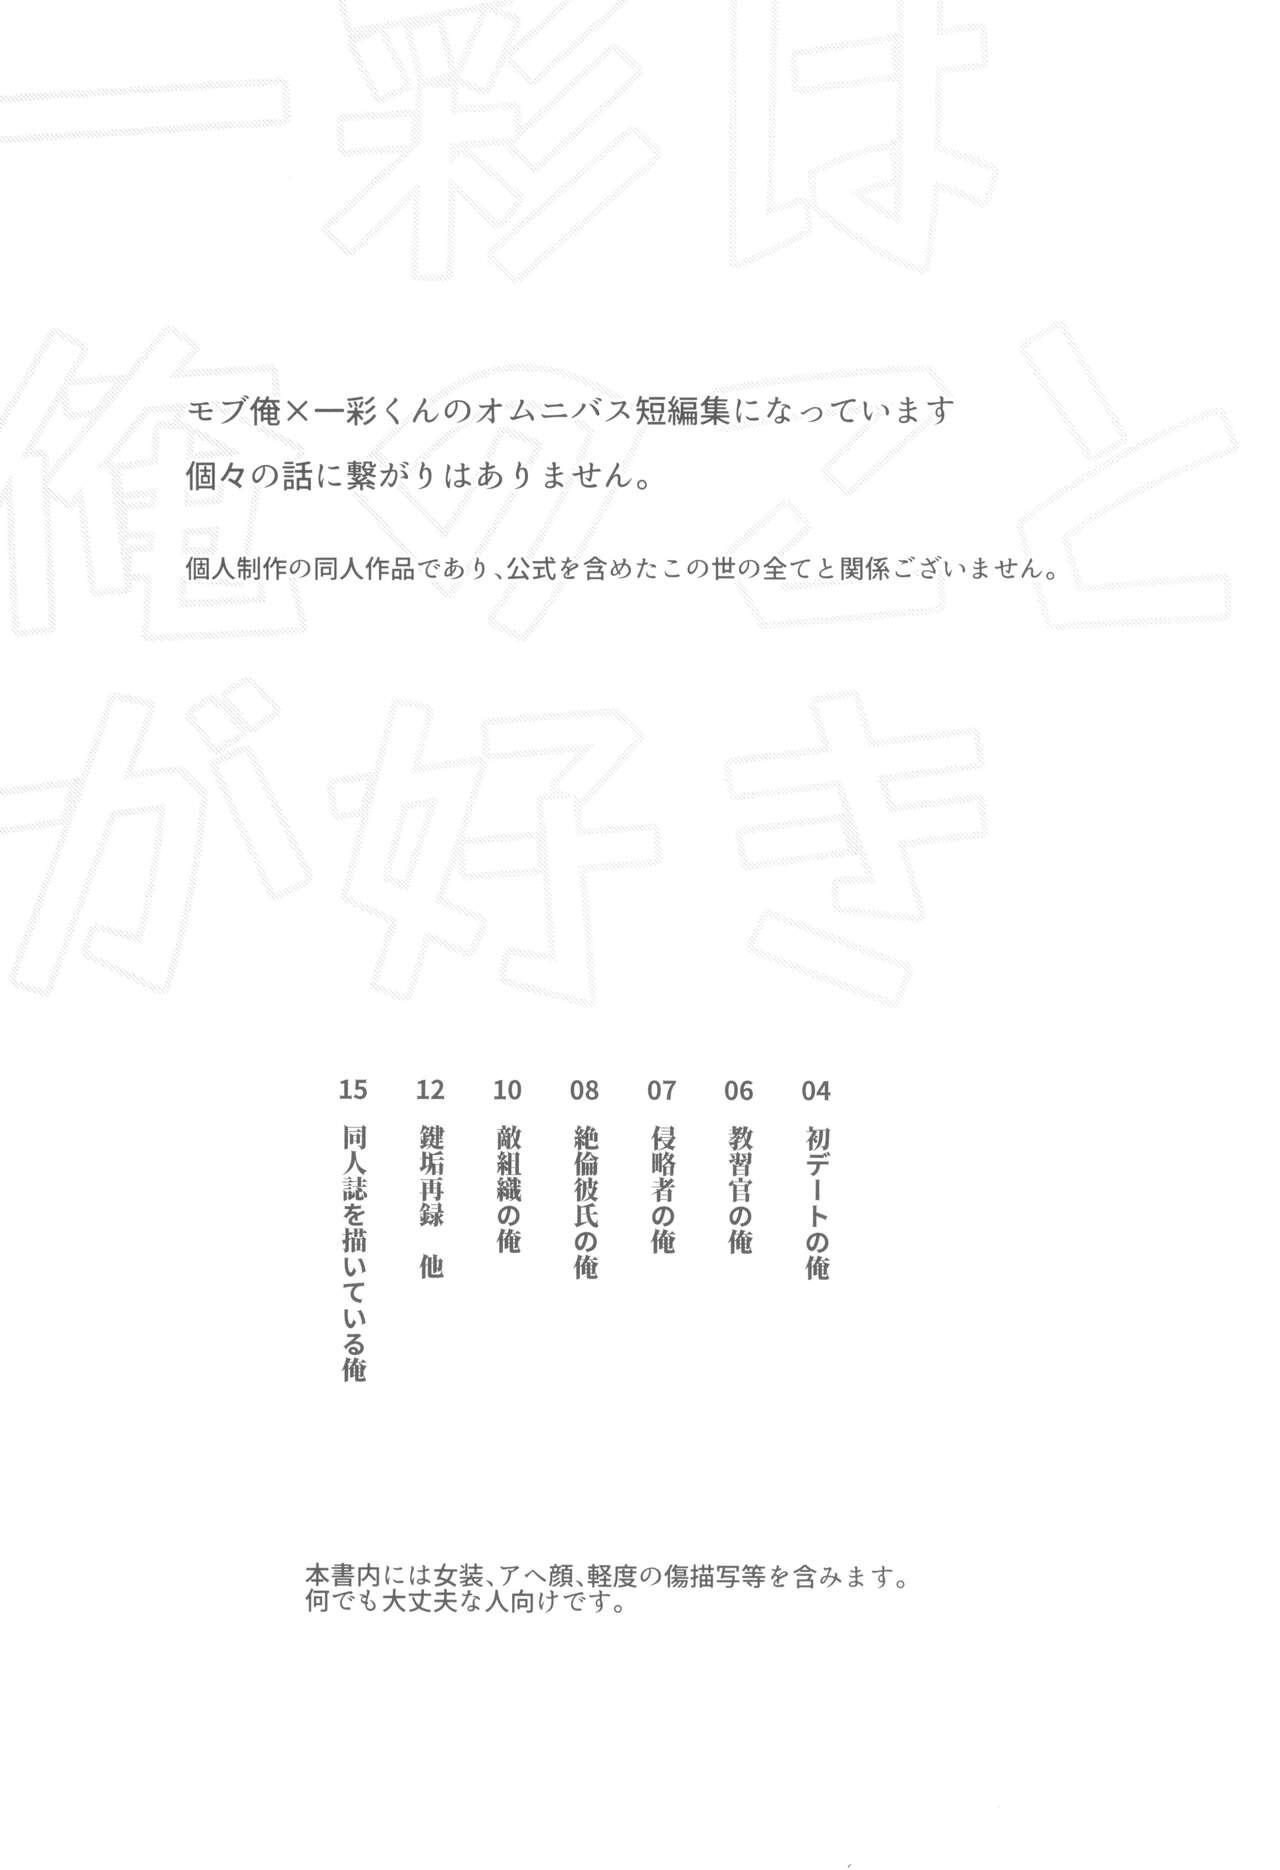 Rabuda Ichi aya wa ore no koto ga suki - Ensemble stars Lips - Page 3